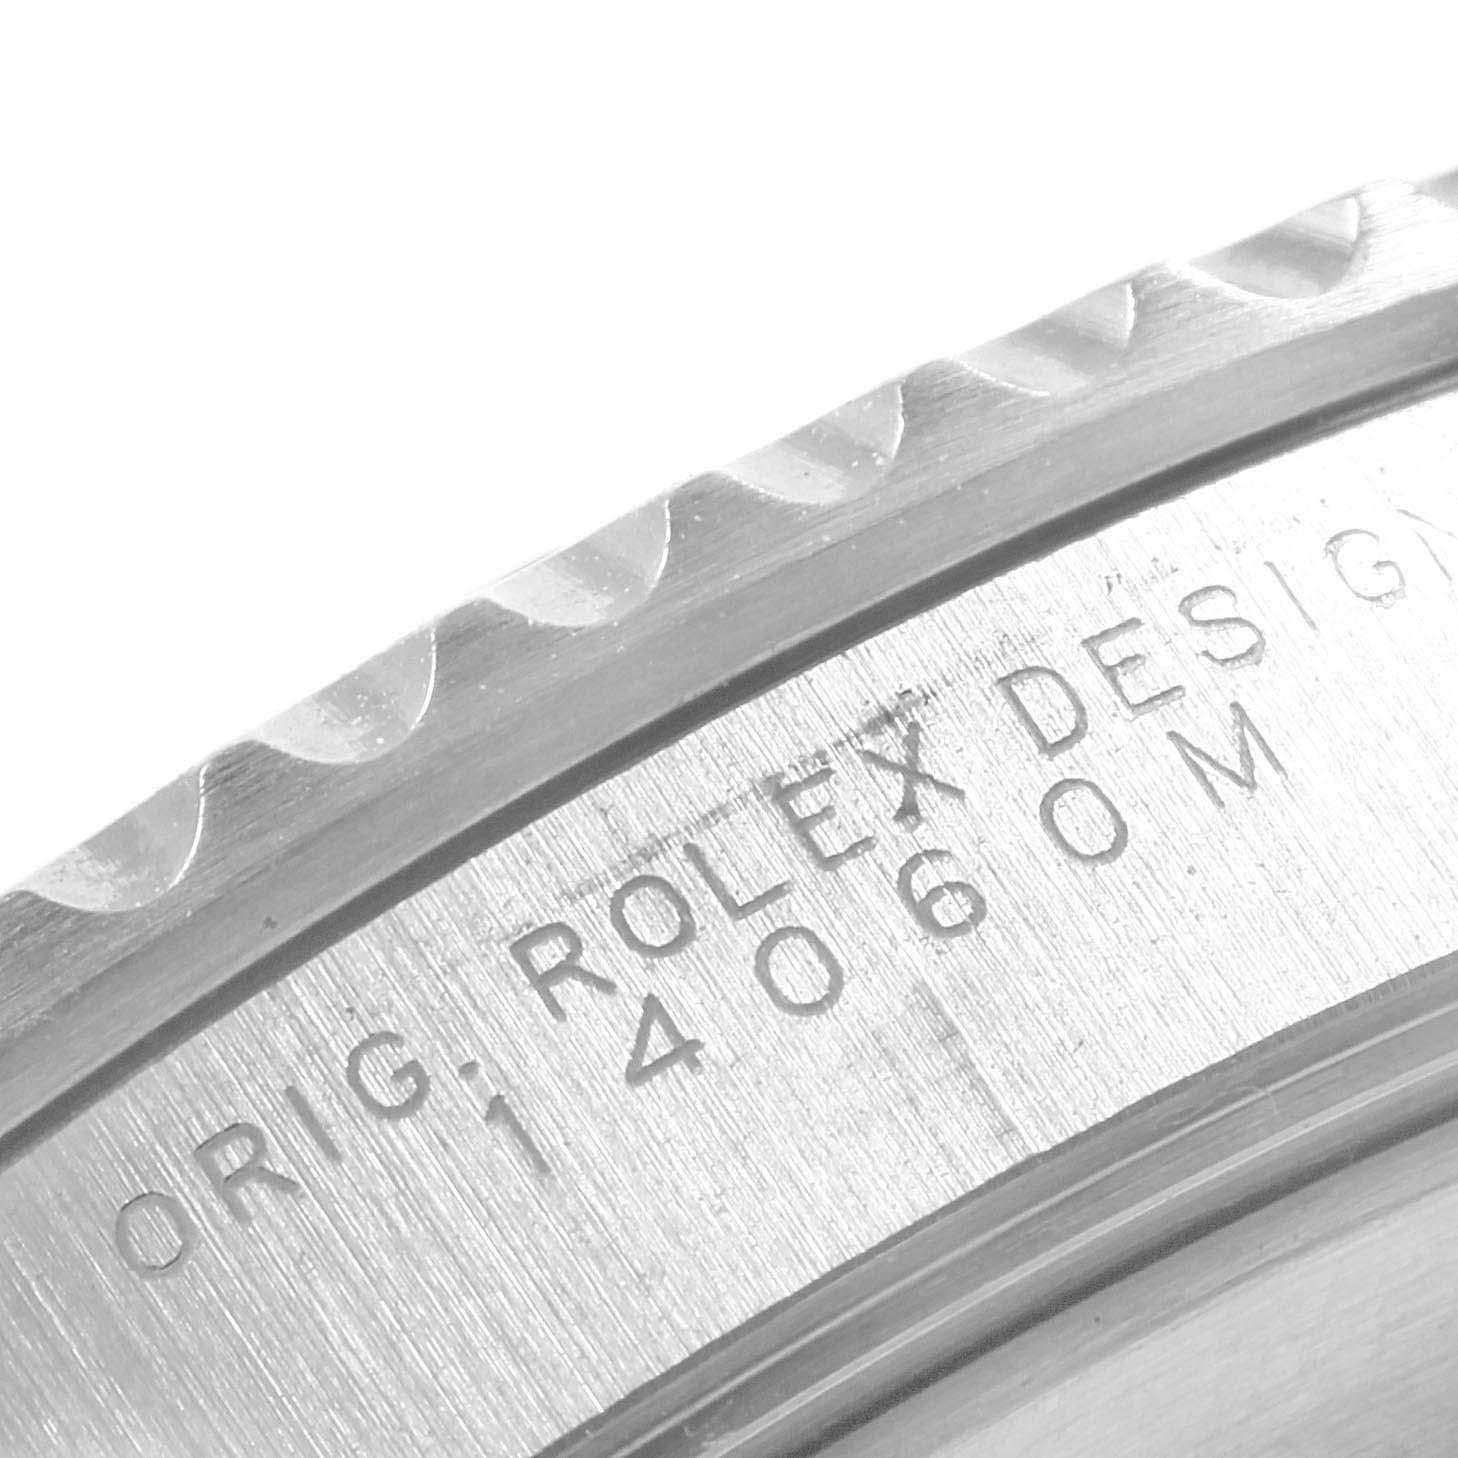 Rolex Submariner Non-Date 4 Liner Steel Steel Men's Watch 14060 3